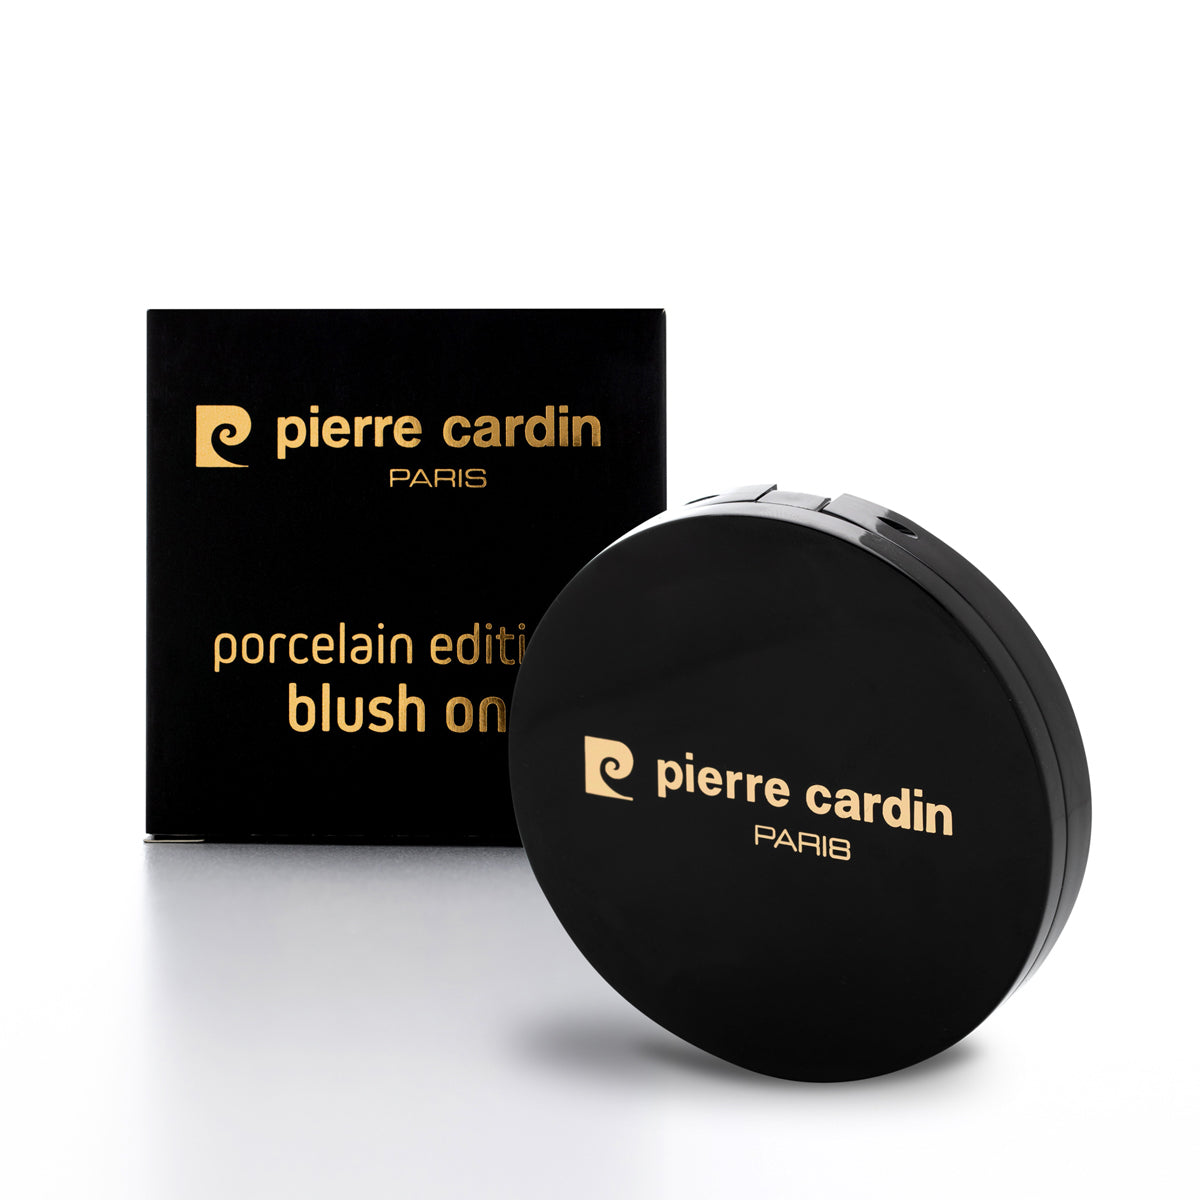 Pierre Cardin Édition Porcelaine Blush Sur Rose Froid 560 - 13 g